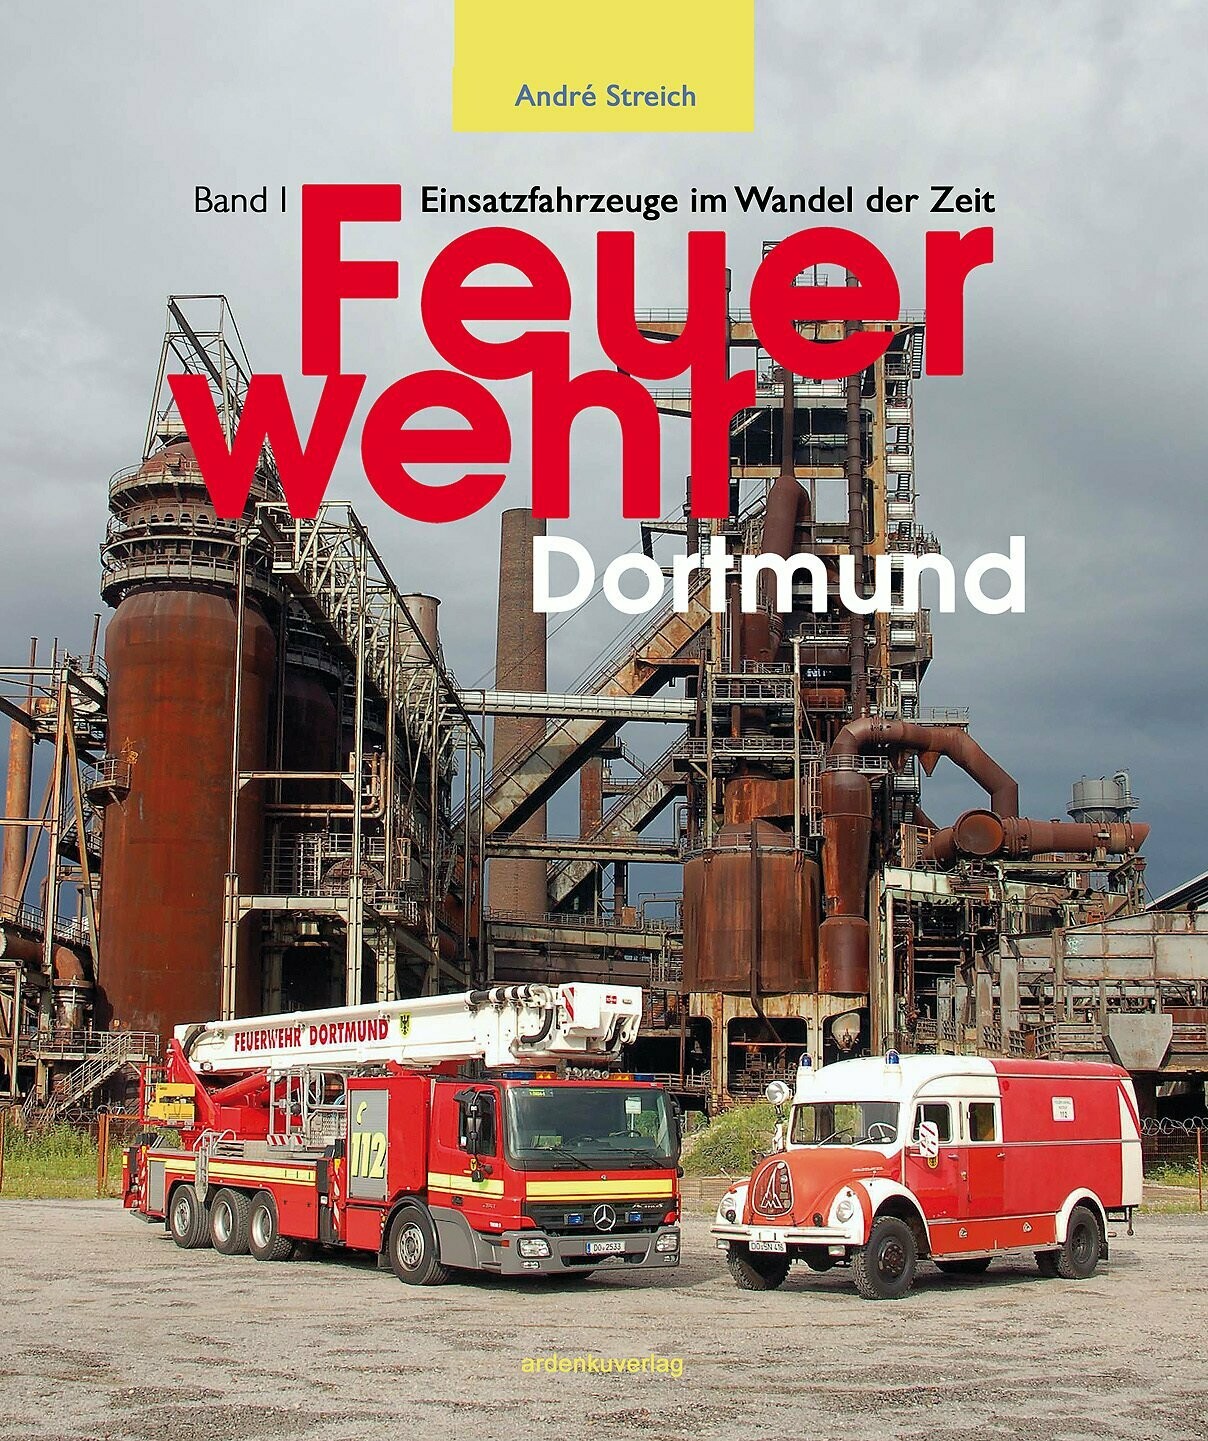 Feuerwehr Dortmund, Einsatzfahrzeuge im Wandel der Zeit, Band 1